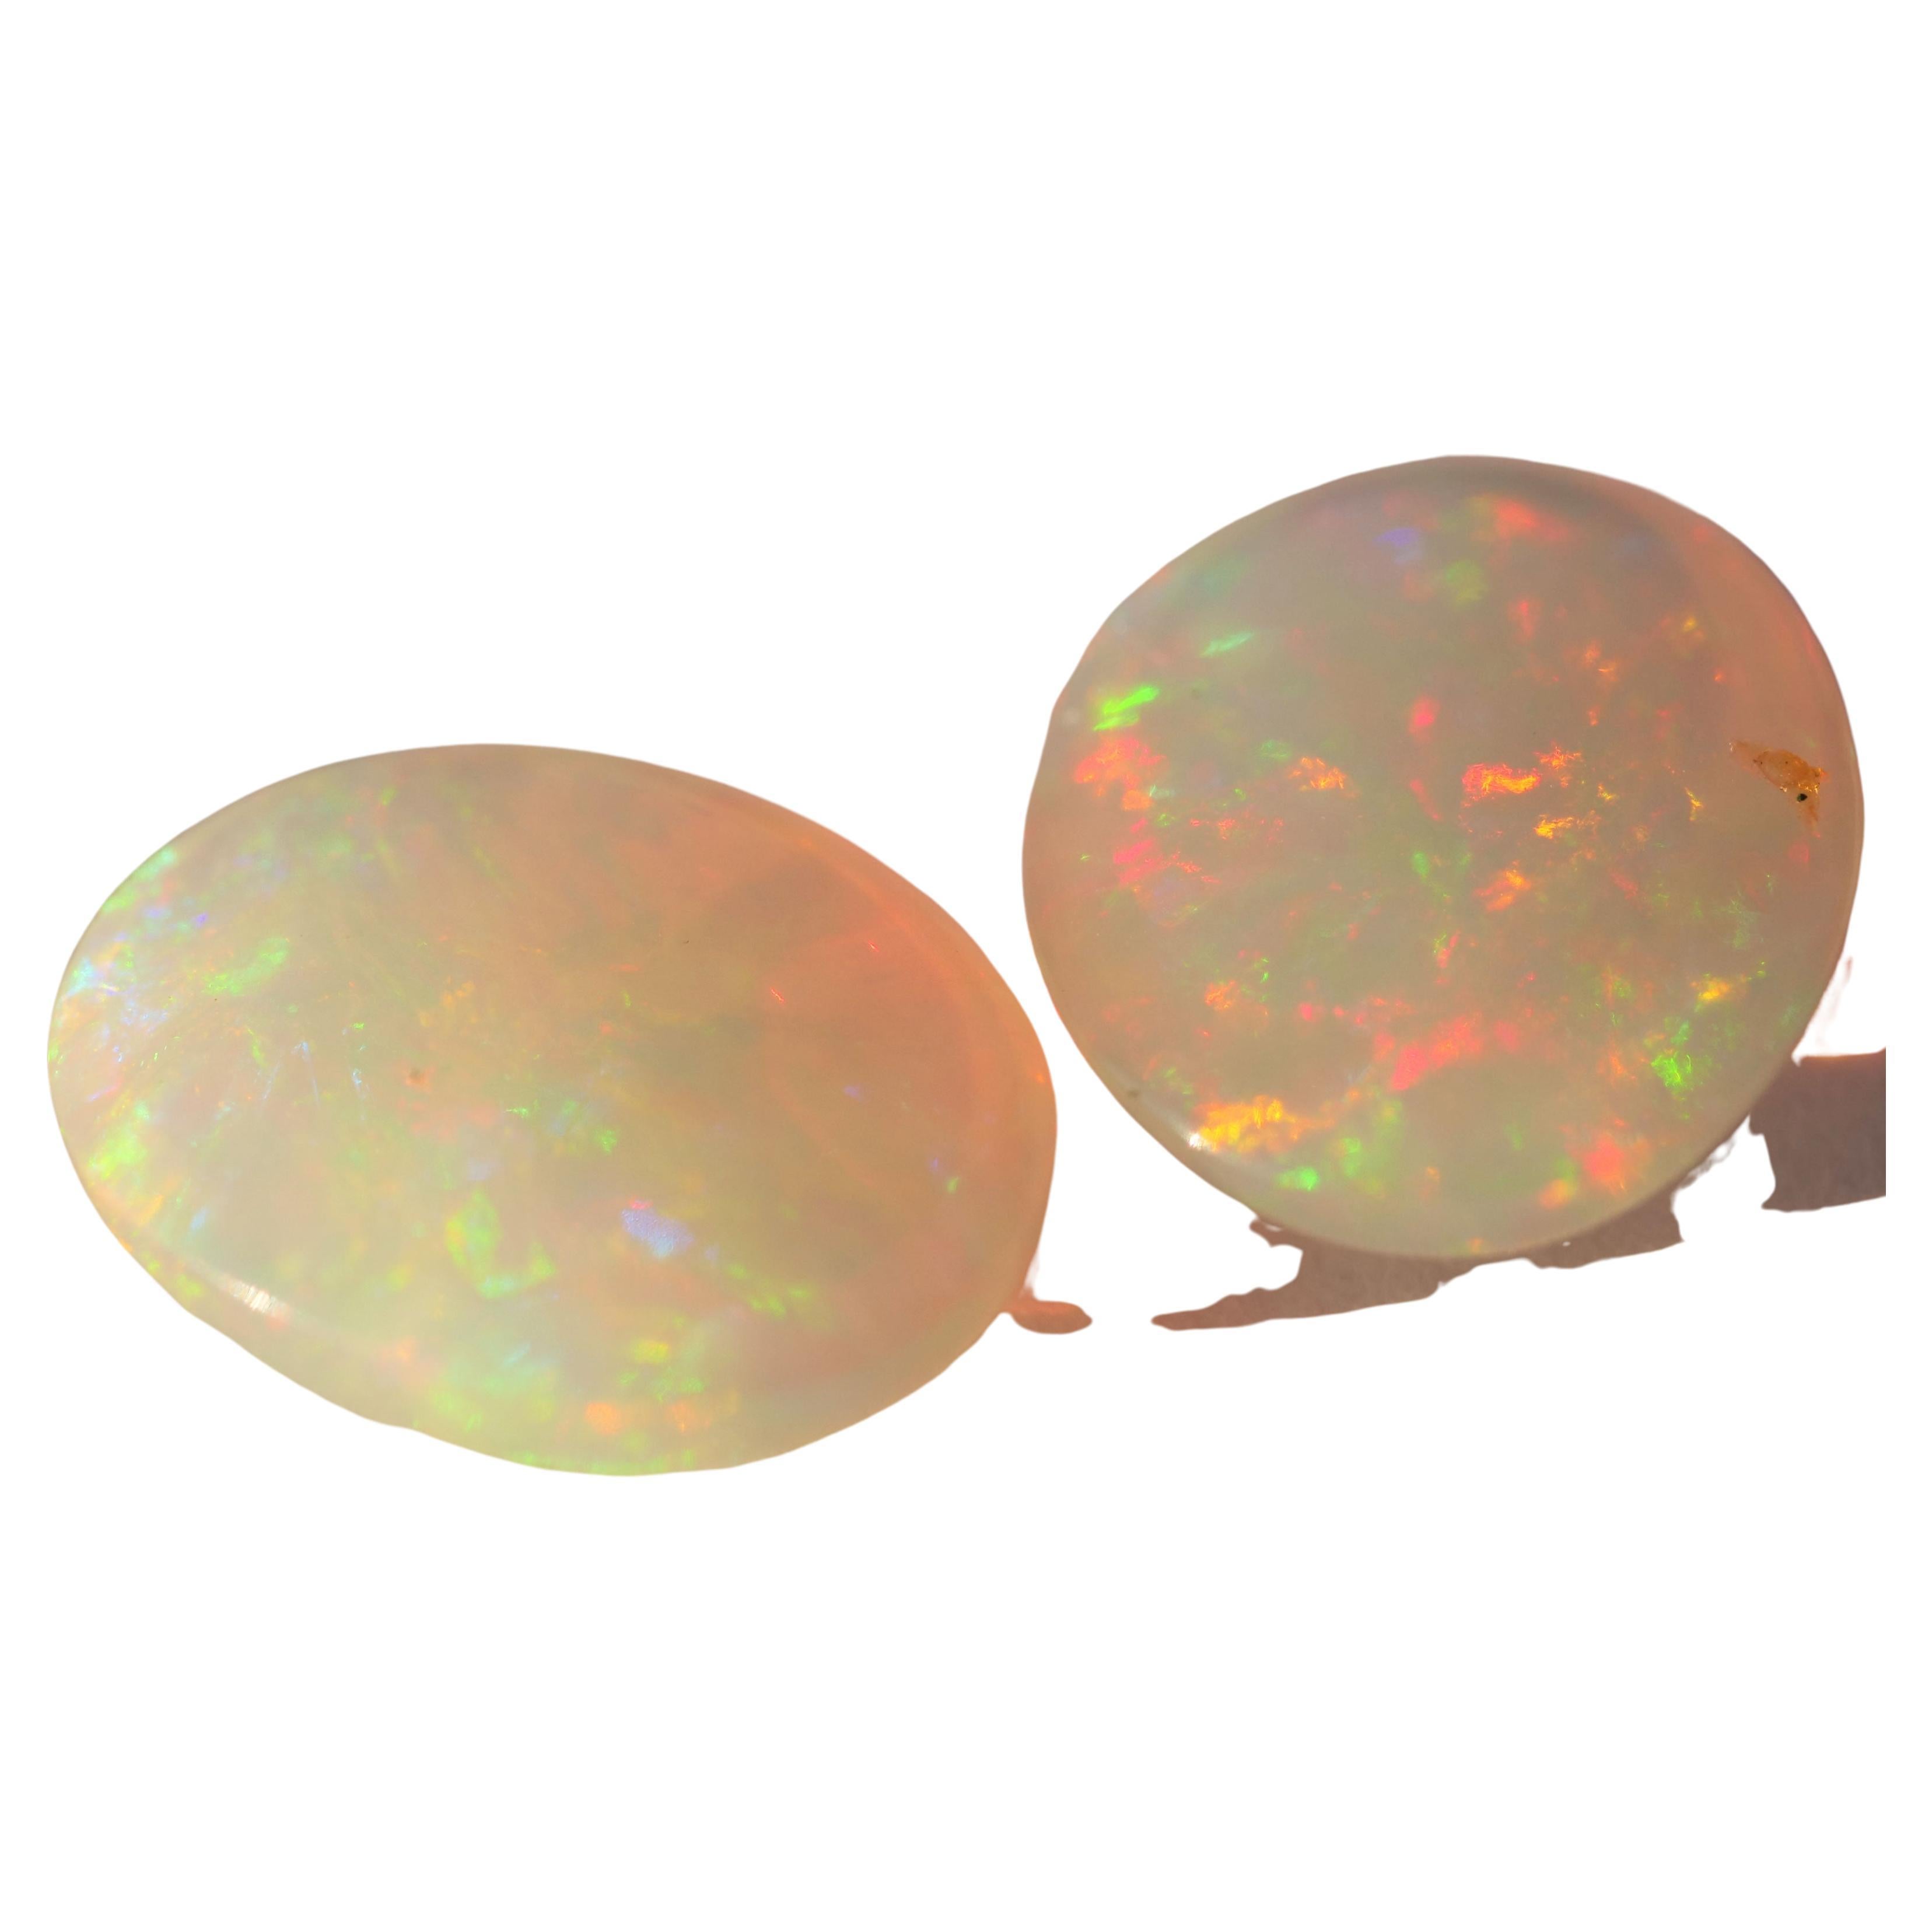 ethiopian opal vs australian opal